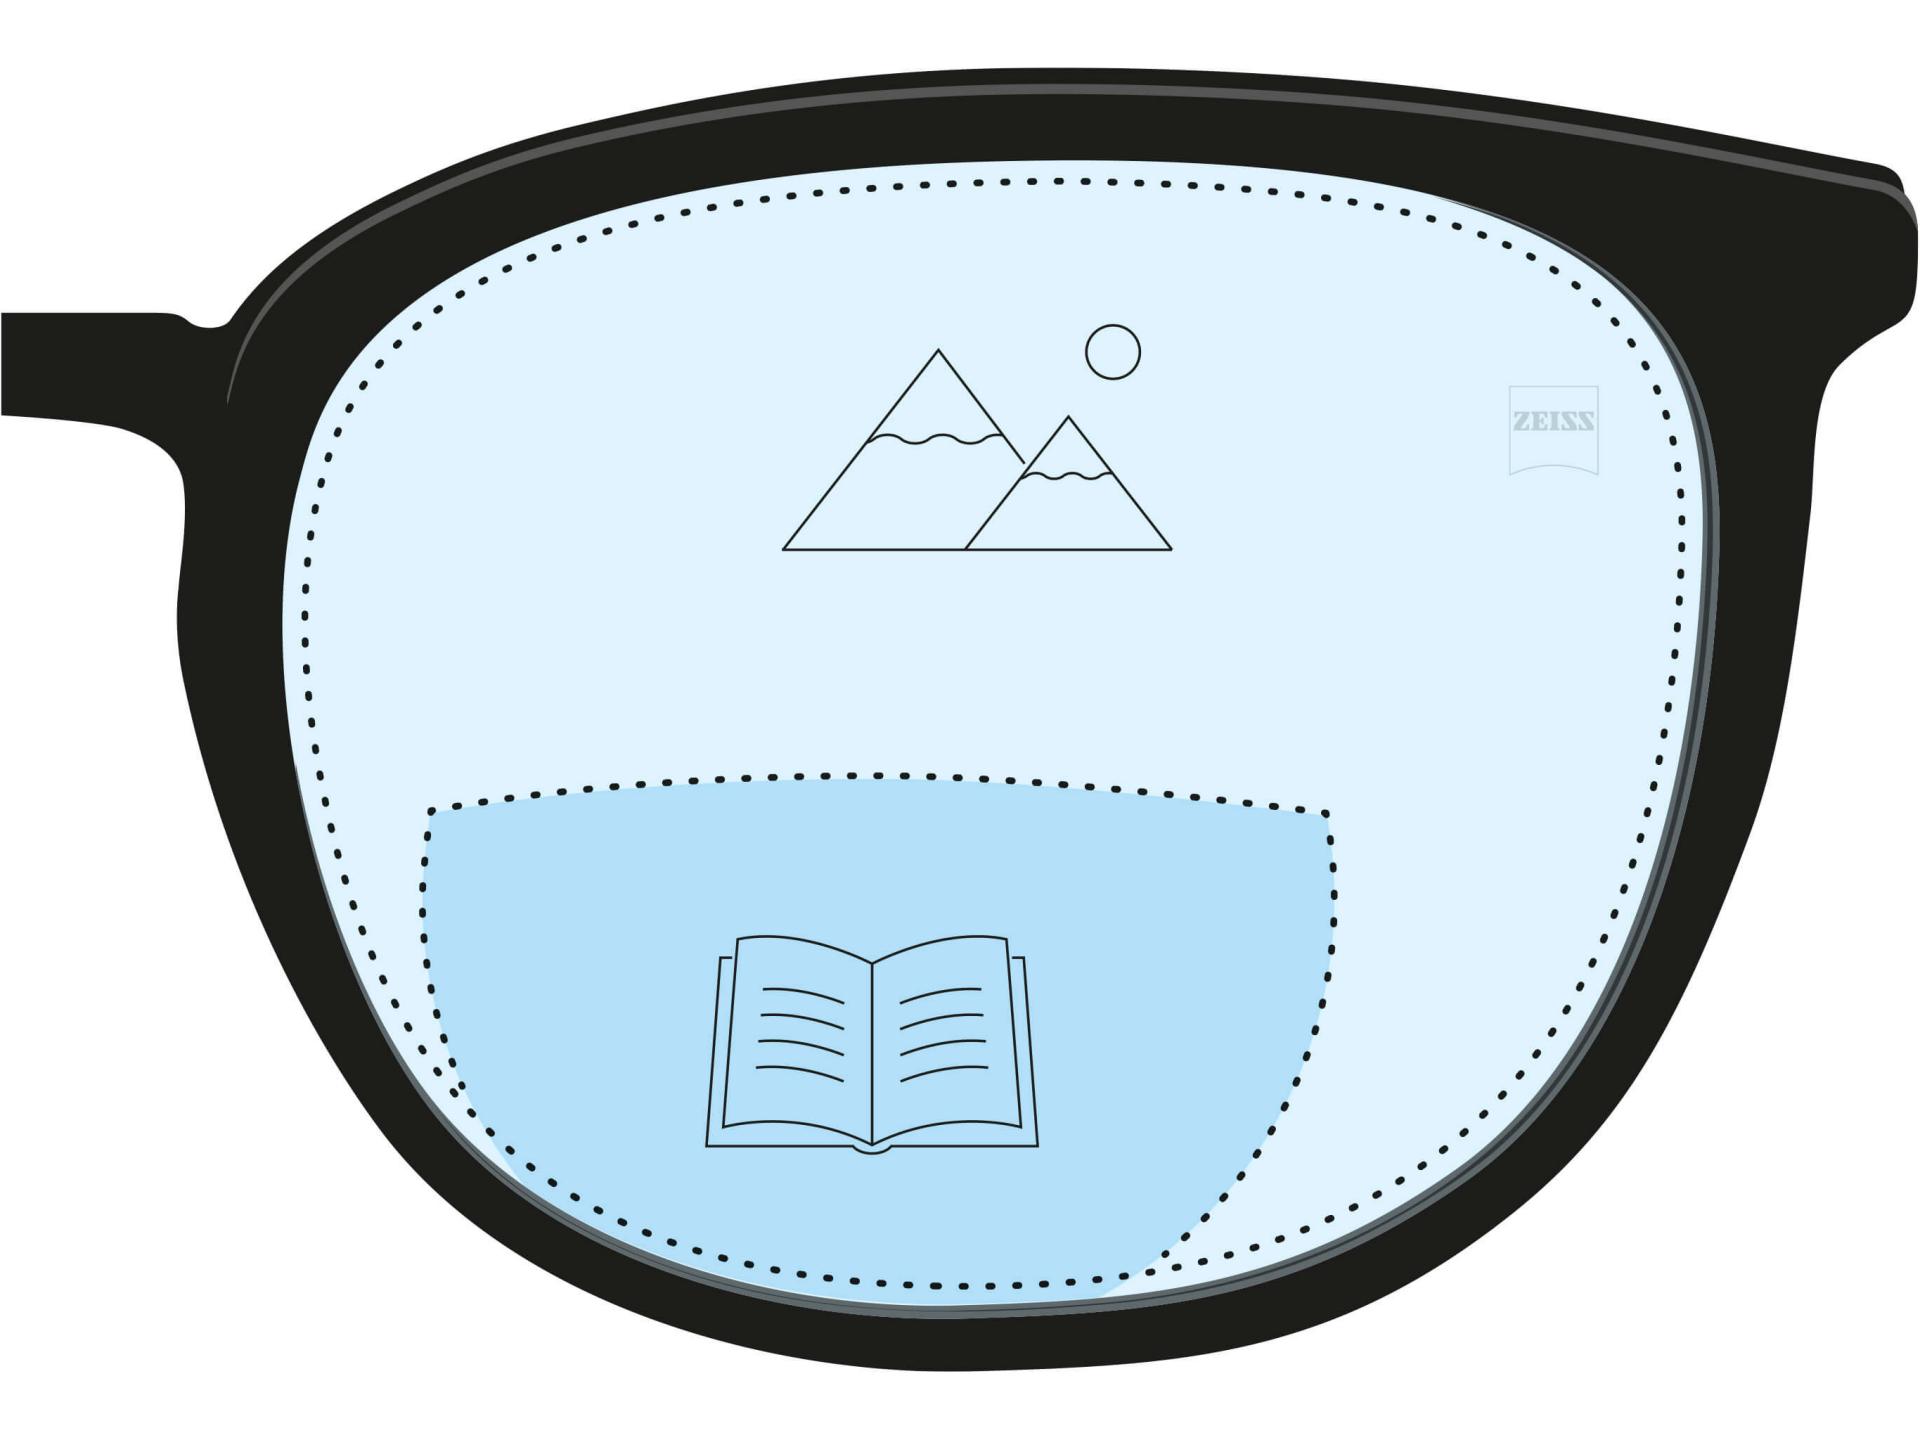 Ilustração de uma lente bifocal. Uma área azul escuro indica a zona de leitura, e a parte azul claro da lente indica a zona de distância.